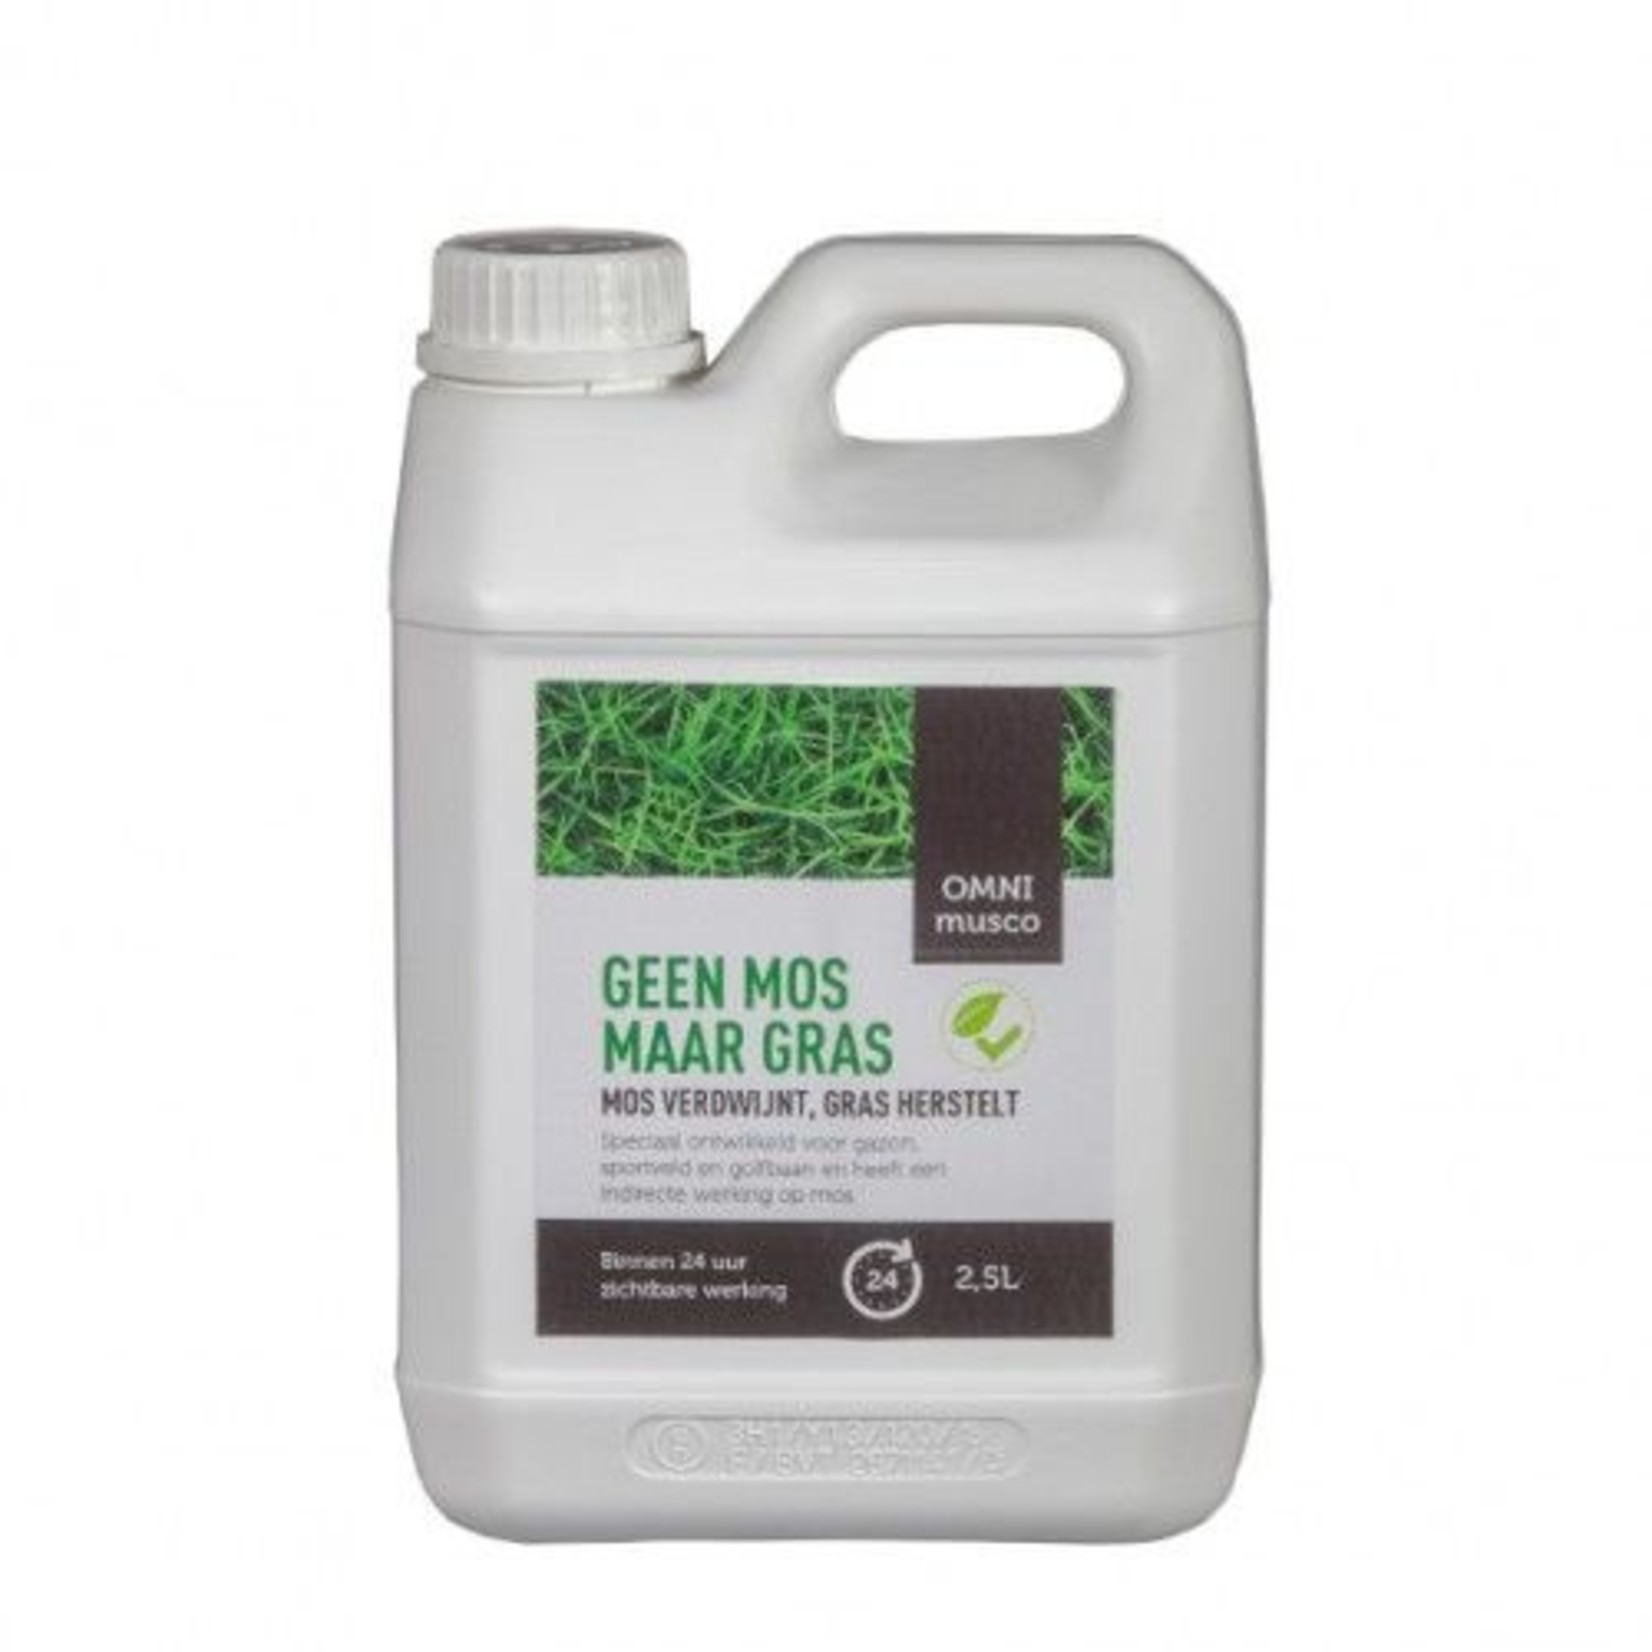 Omni Musco 2,5 liter (concentraat) tegen mos in gazons